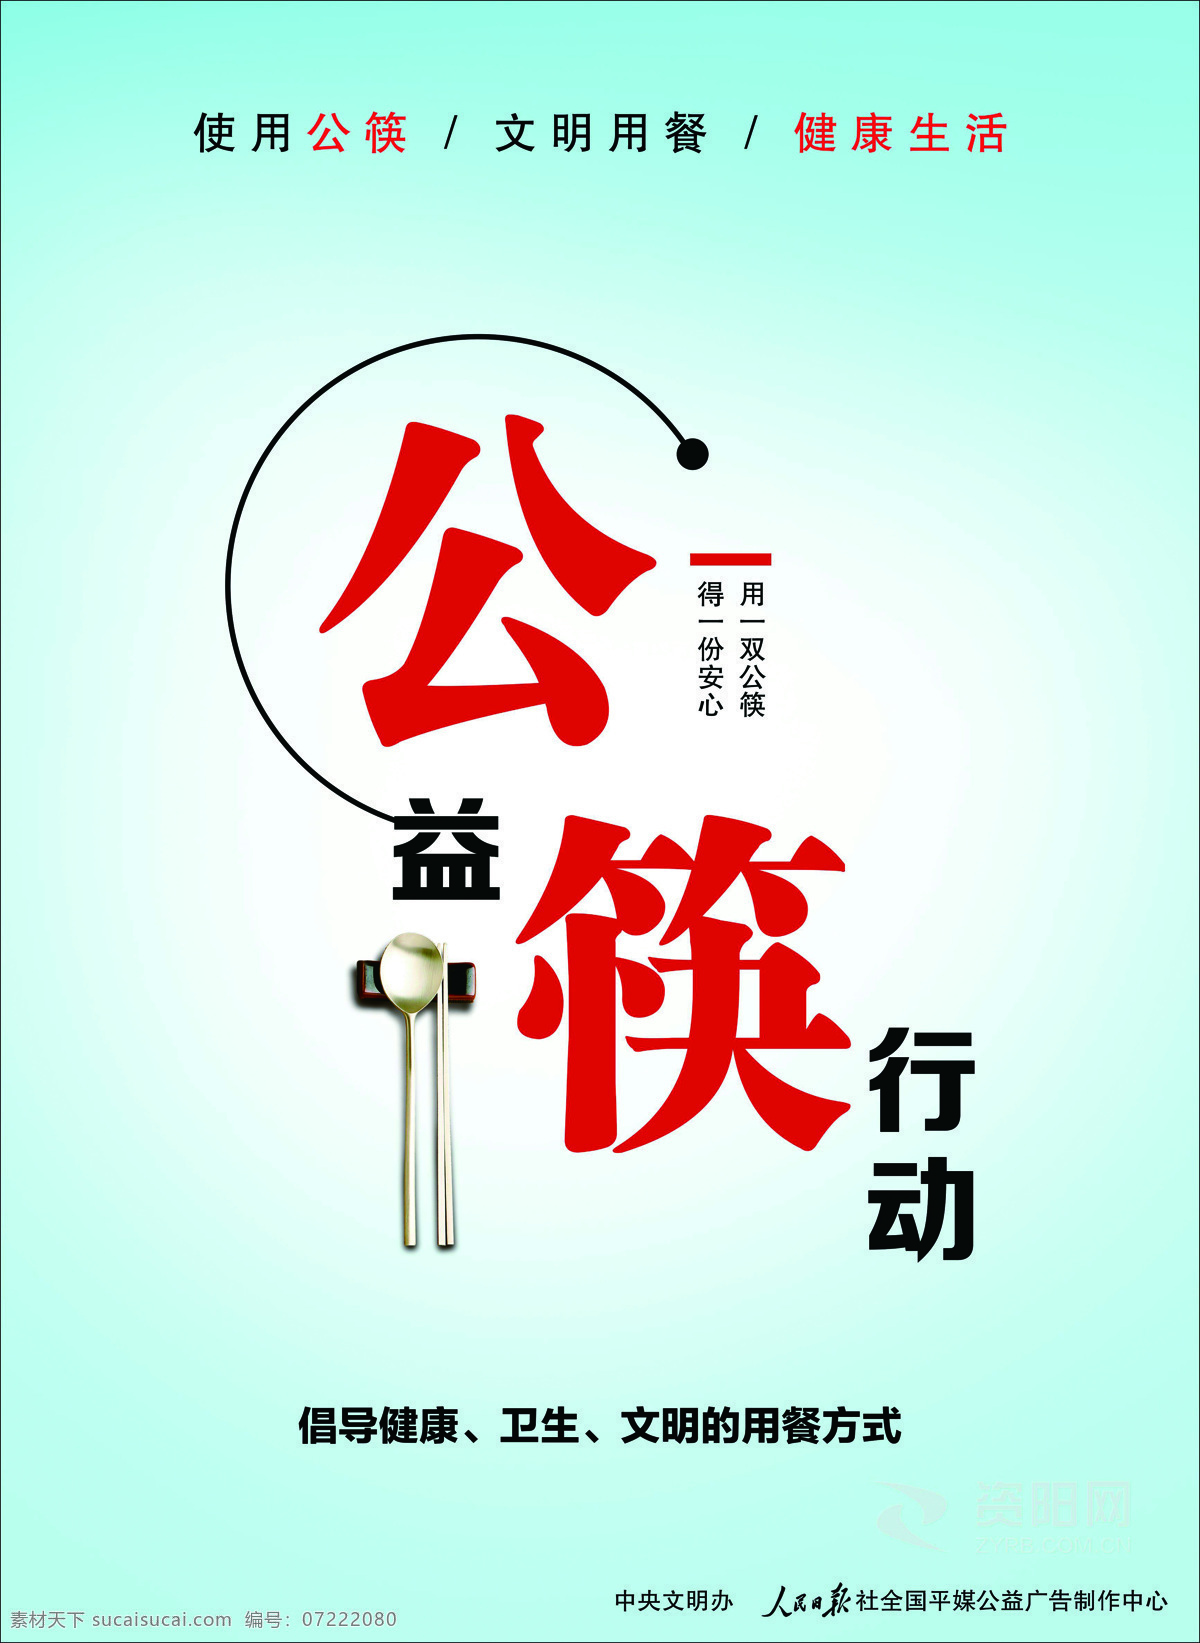 公筷行动 公勺公筷 文明用餐 使用公筷 公益筷行动 勺子 筷子